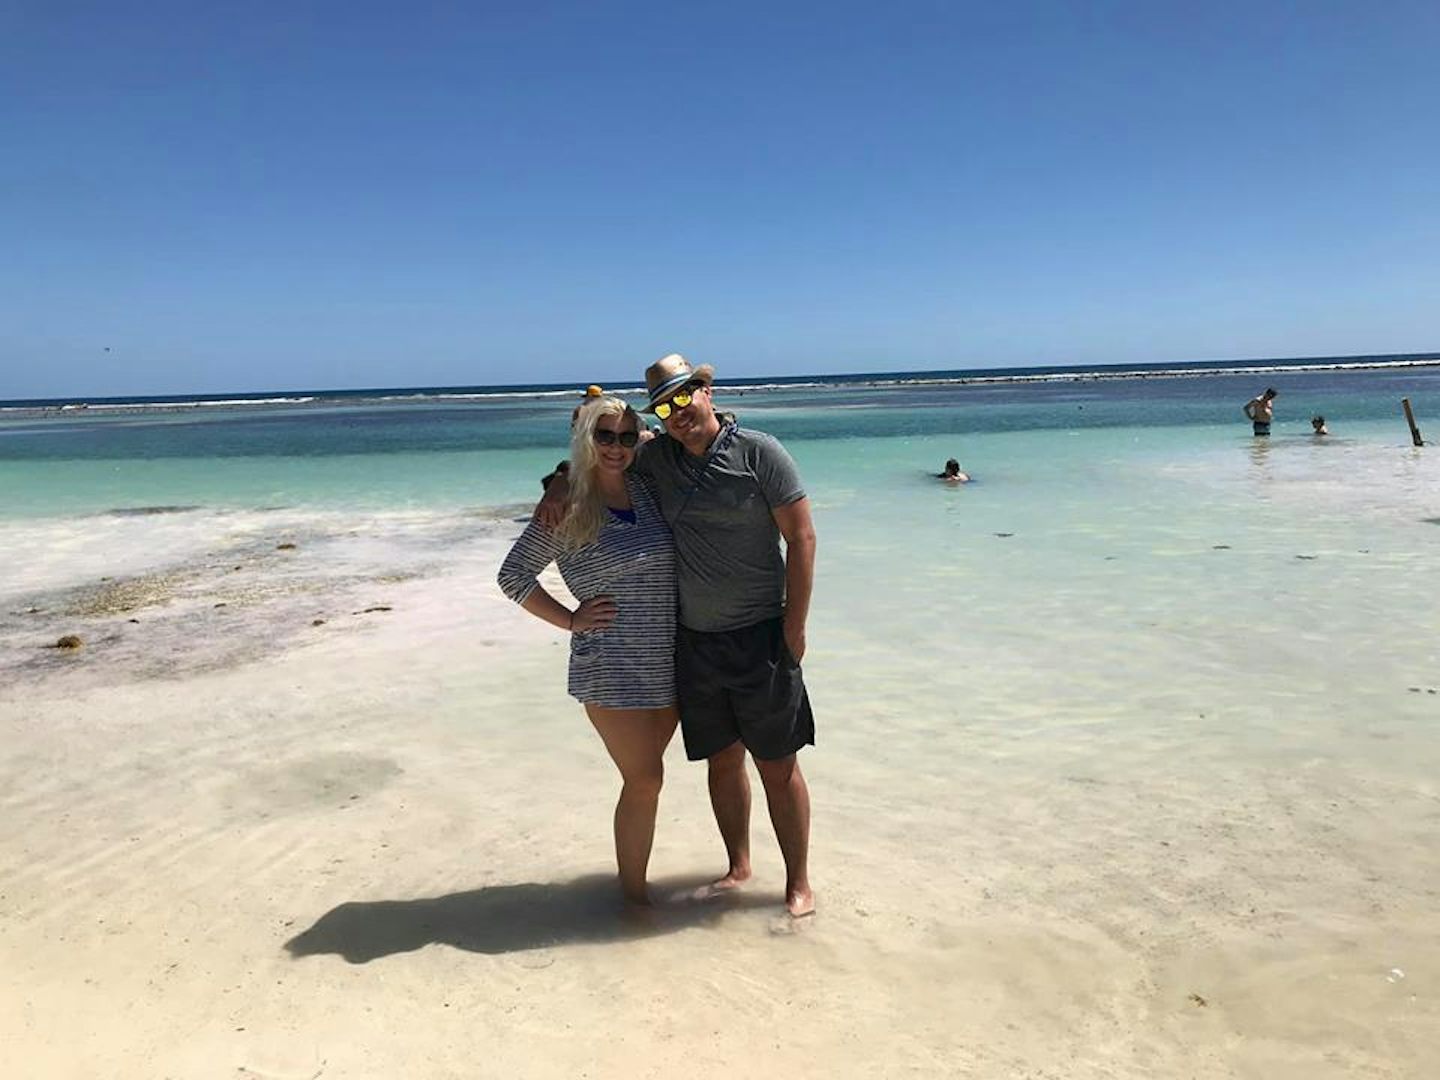 me and my husband at the beach at costa maya